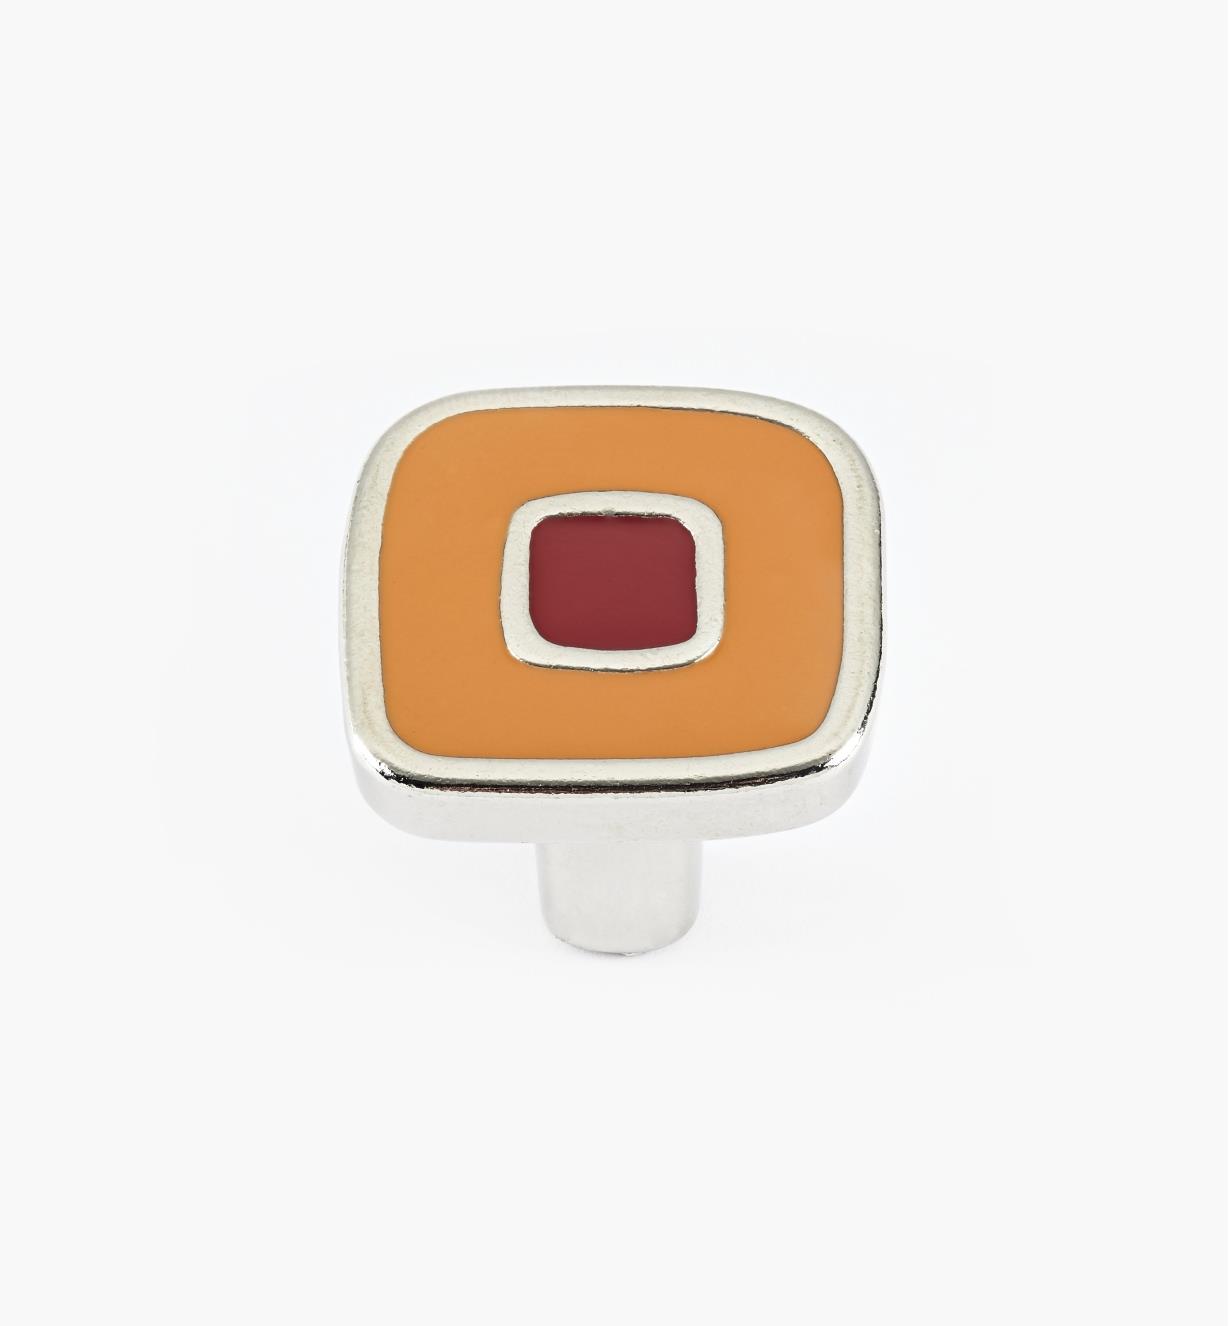 01X4350 - Petit bouton émaillé, orange et rouge, 30 mm